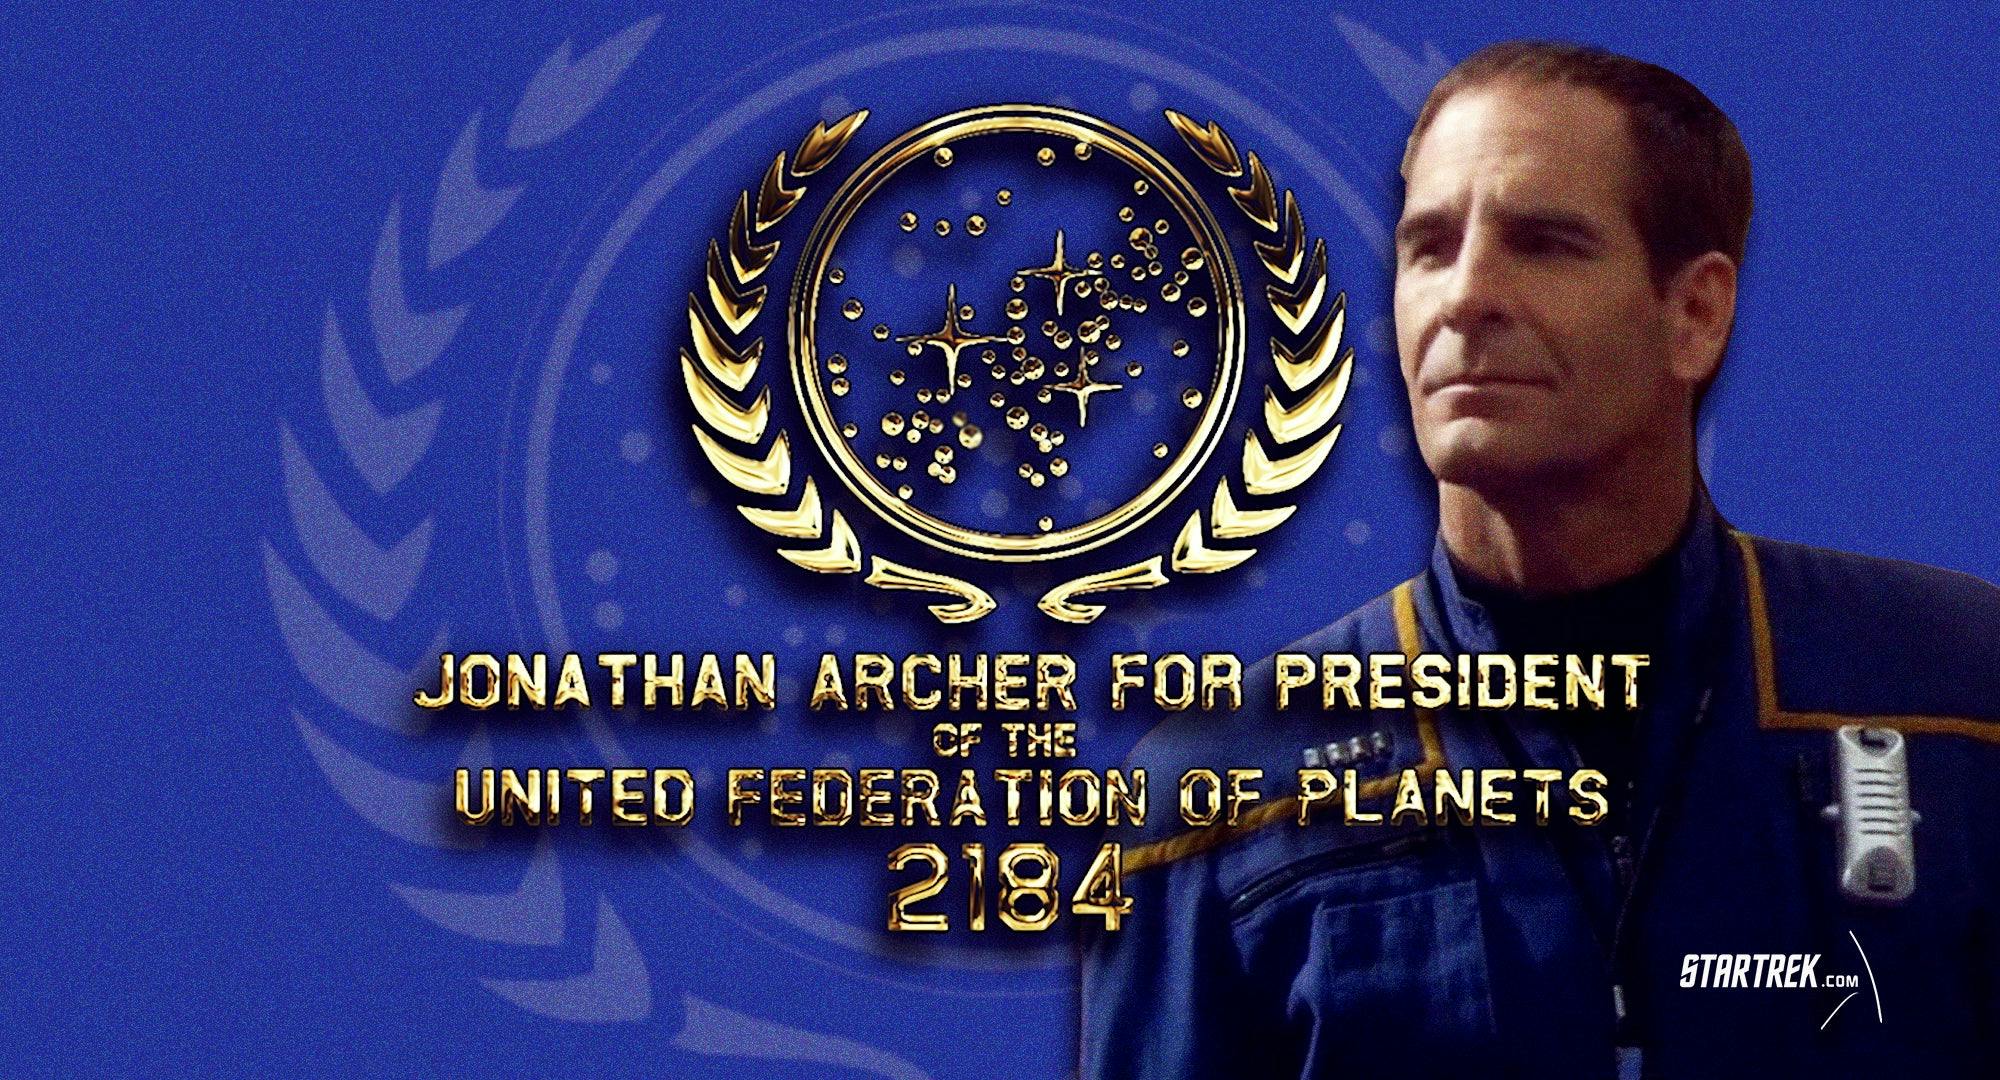 Jonathan Archer For President